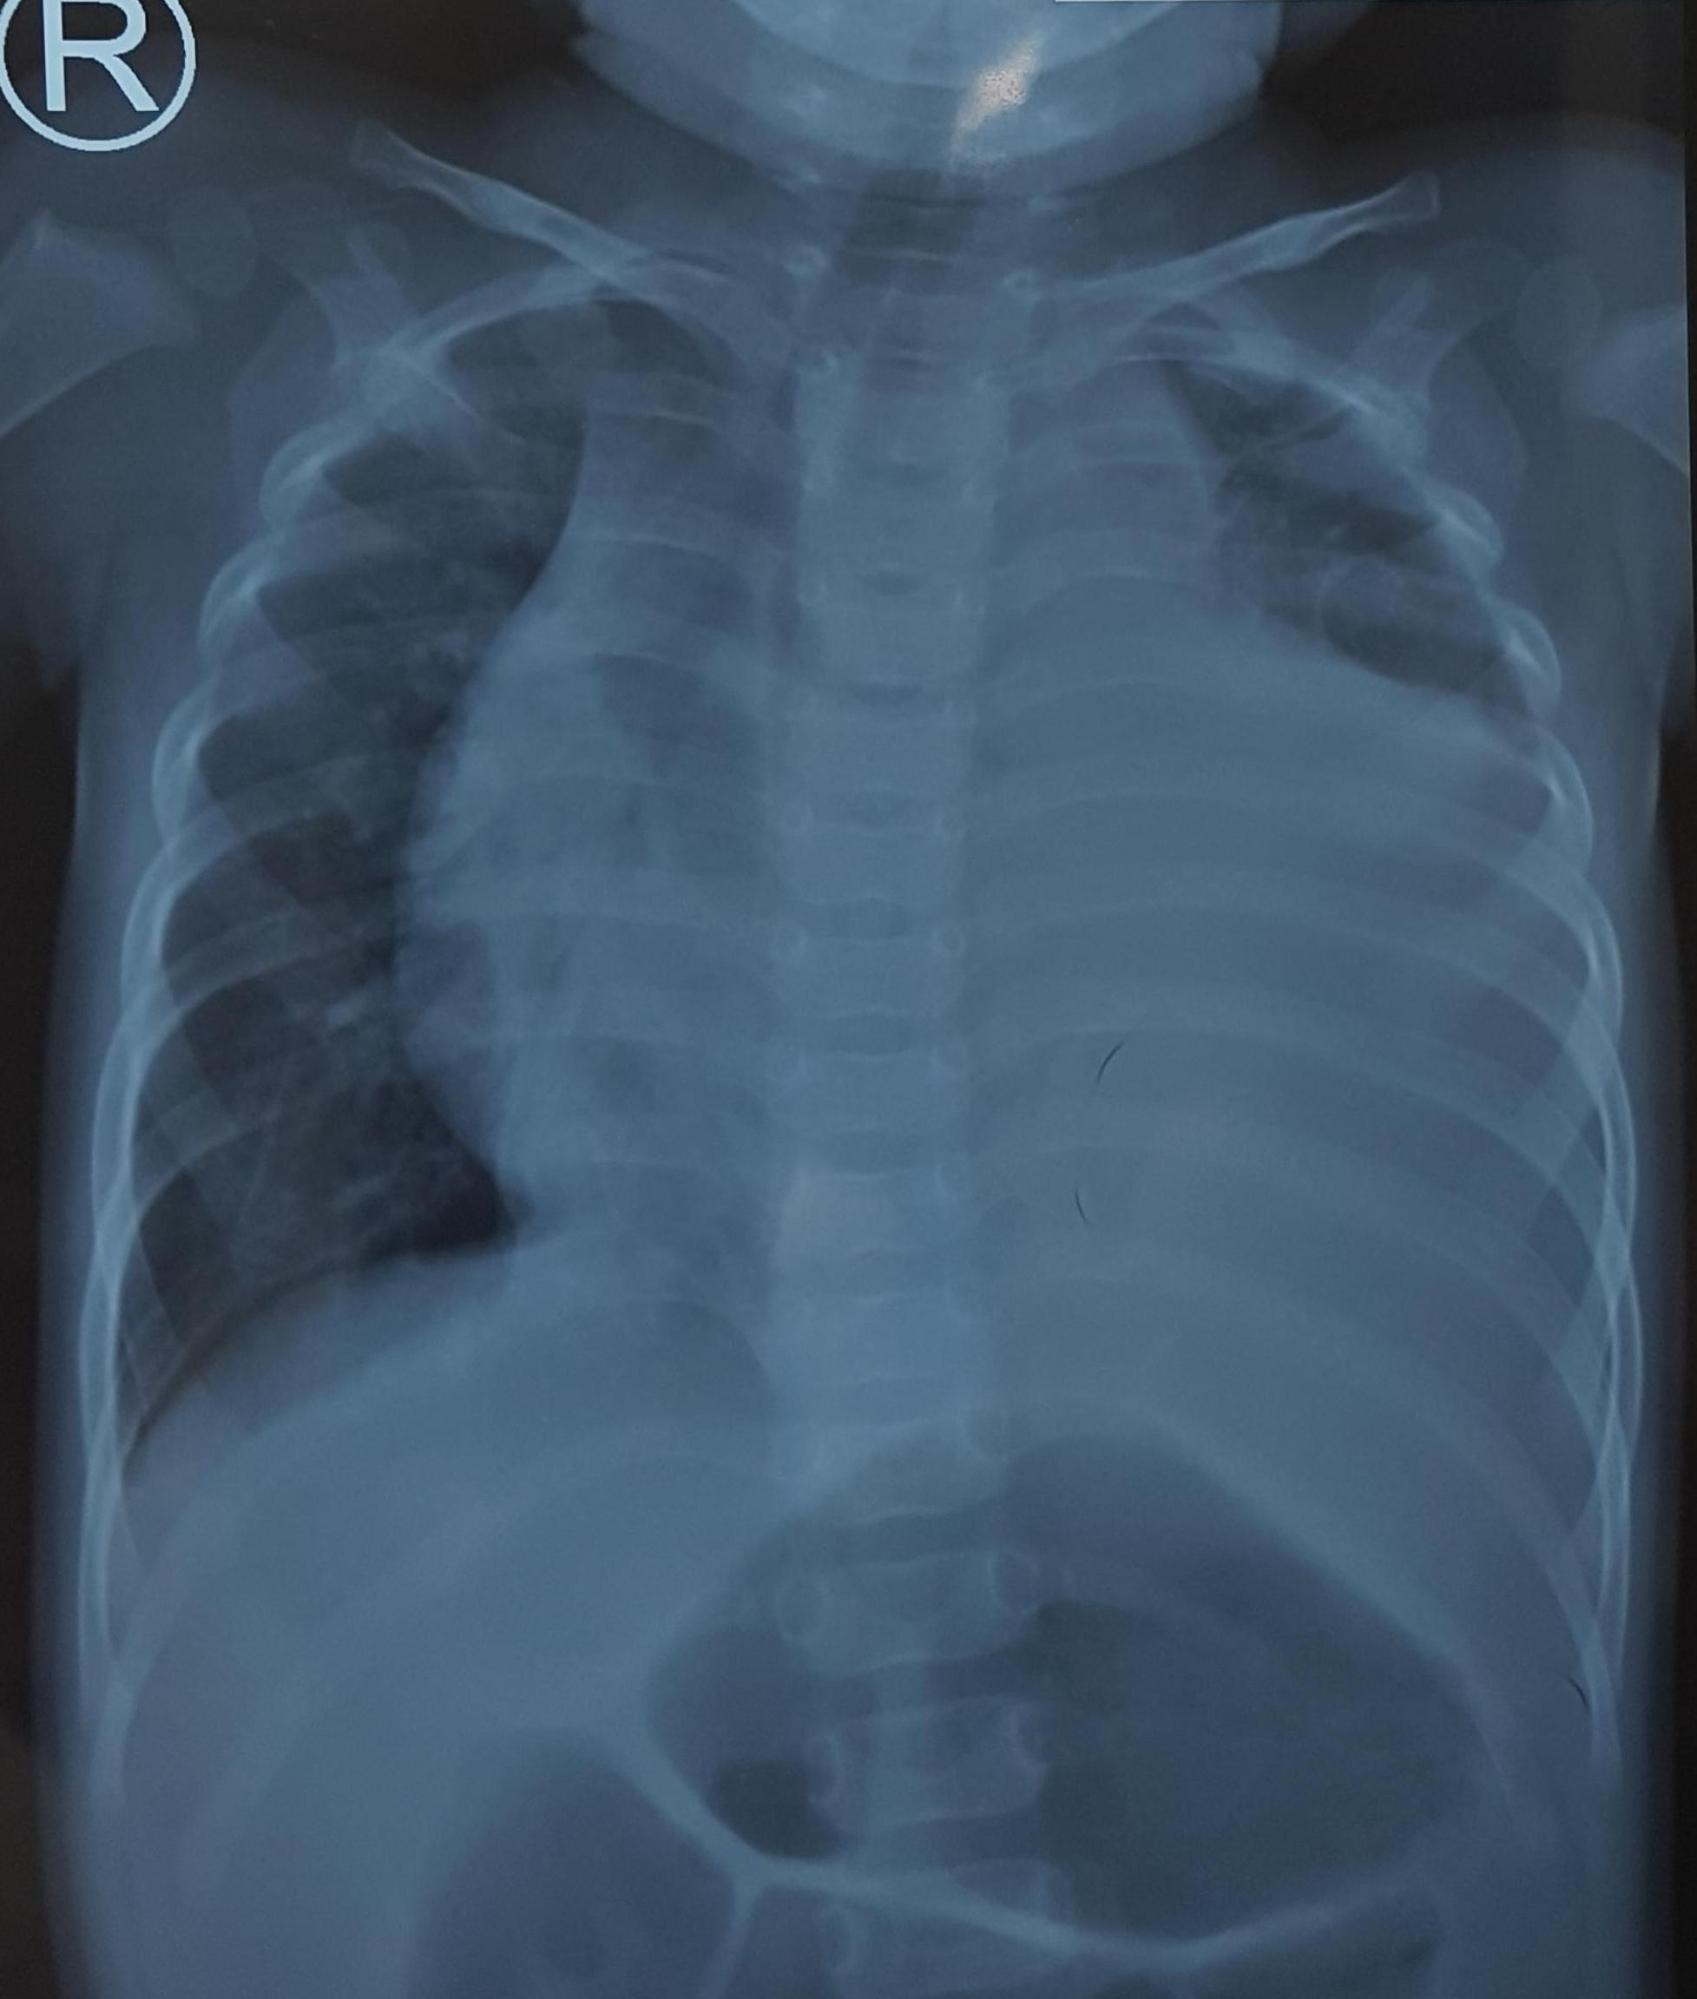 Tràn dịch màng phổi trái lượng nhiều gây chèn ép phổi, đẩy lệch tim và khí quản